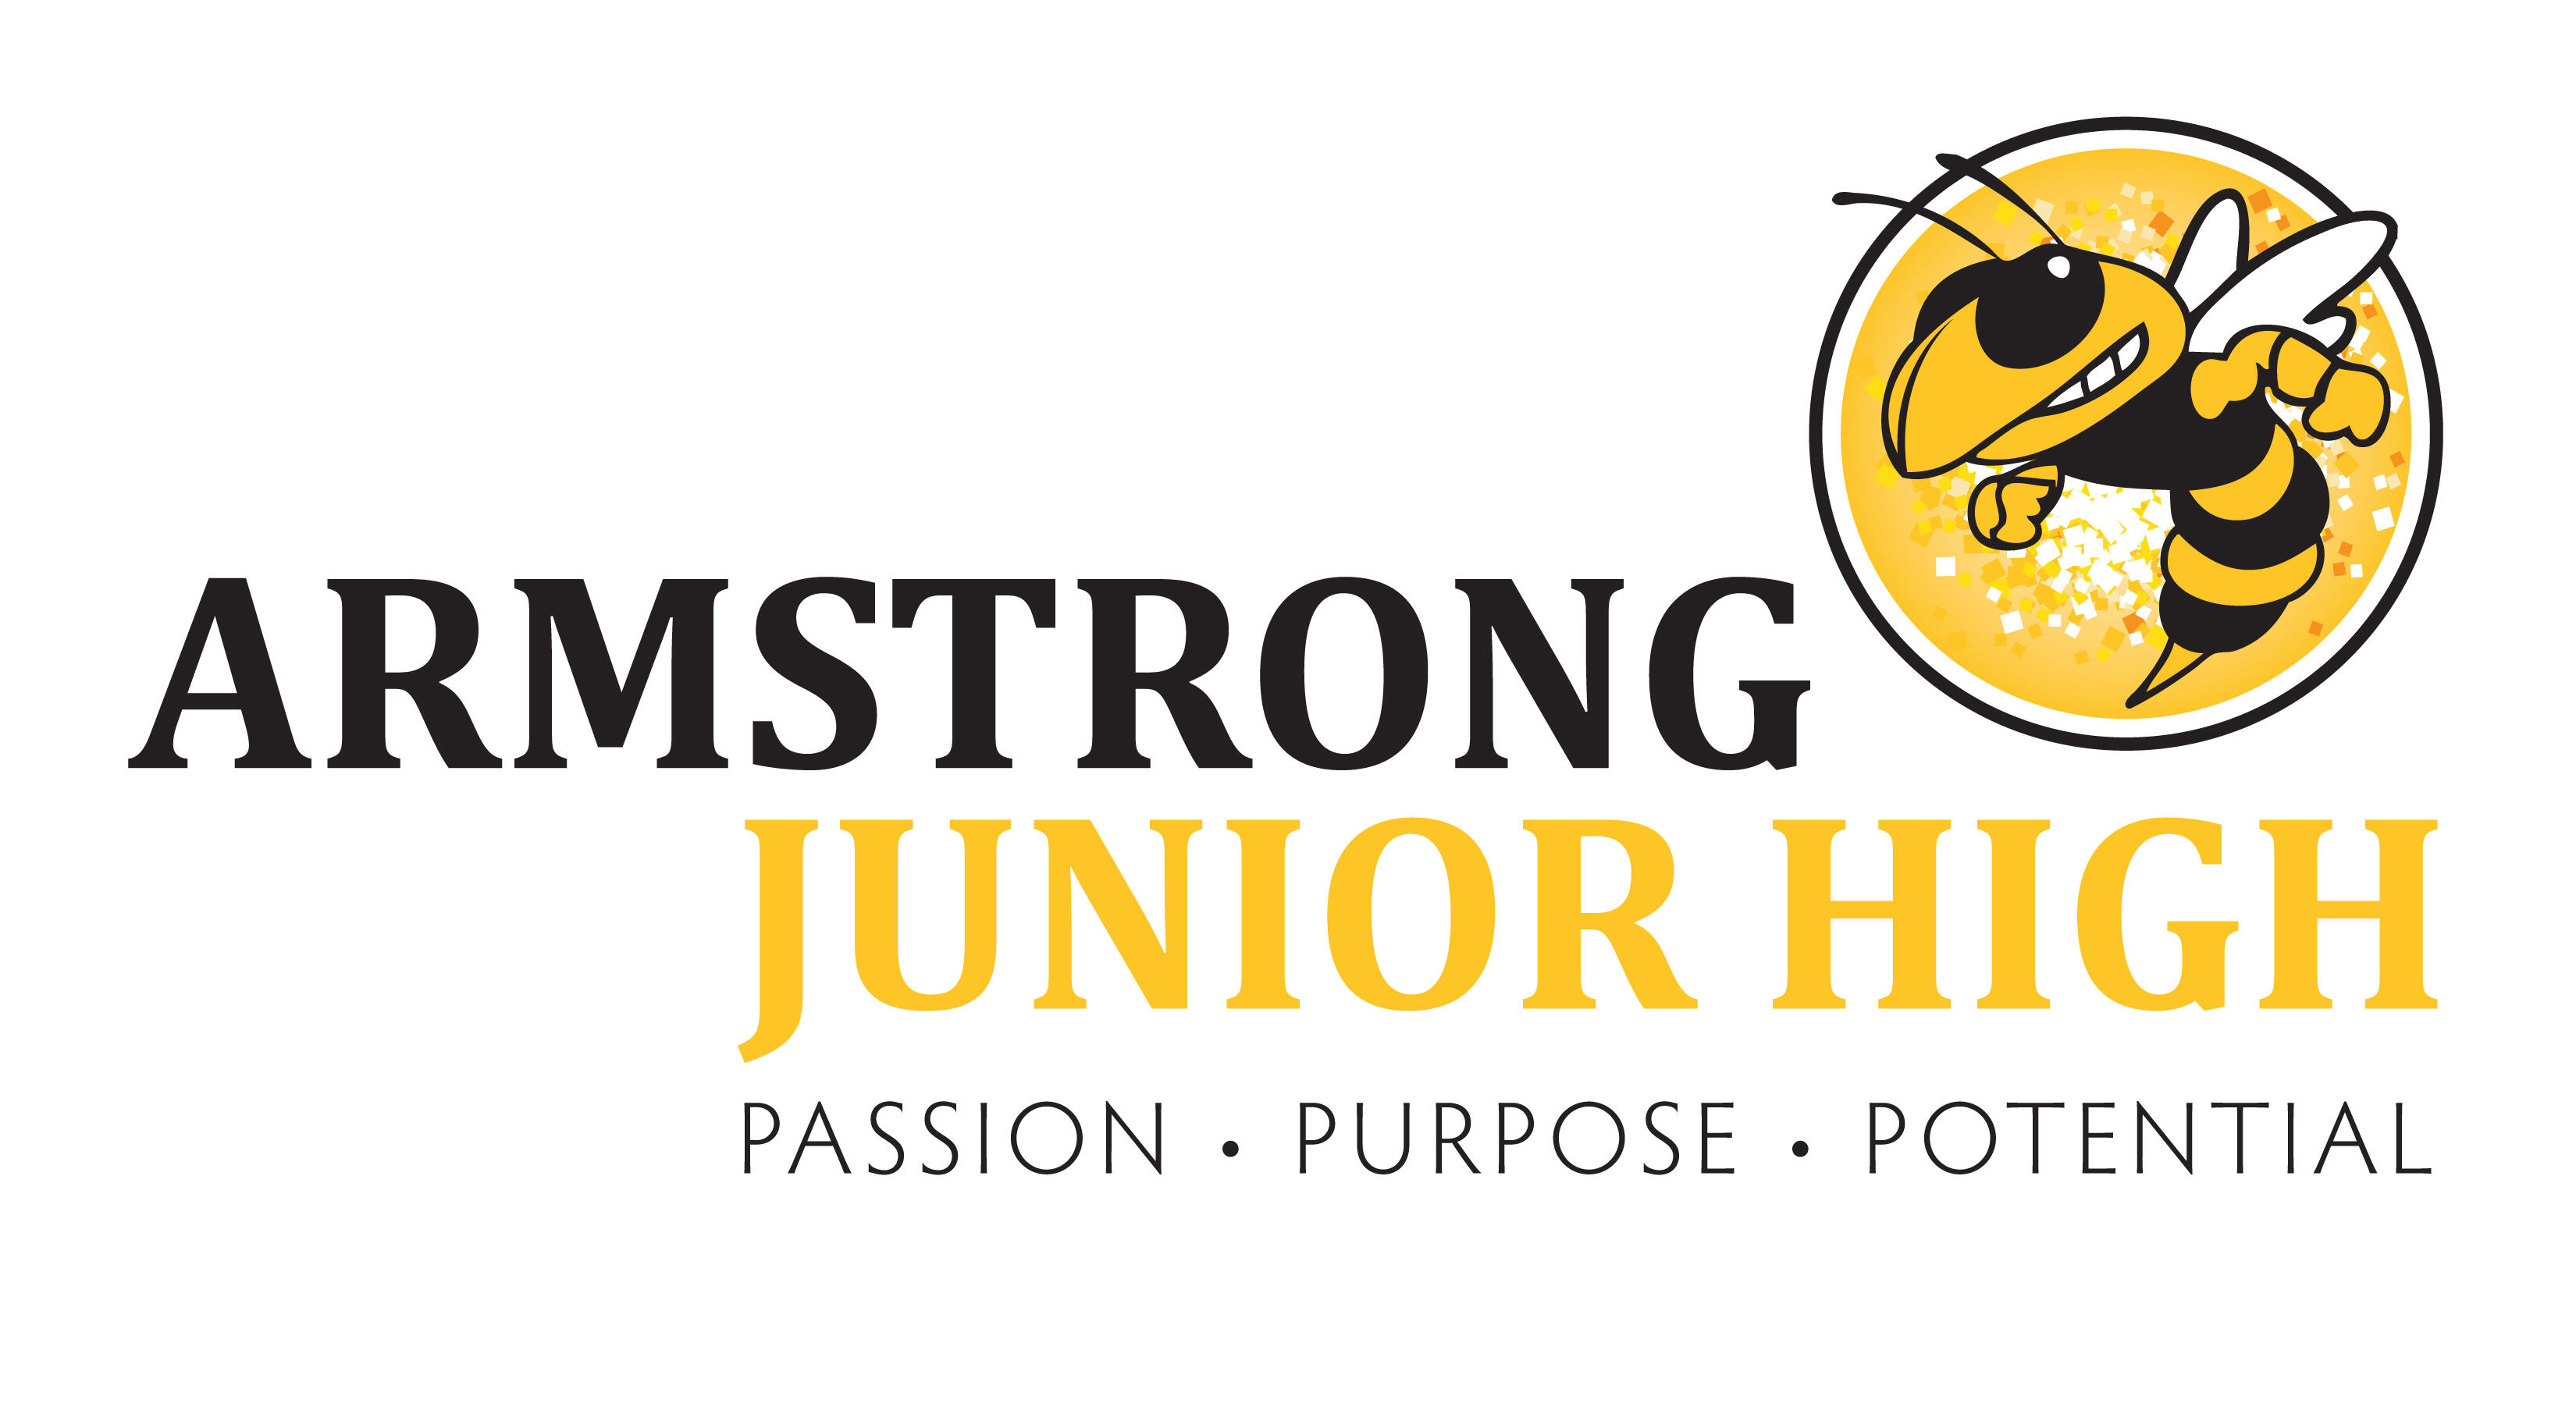 Armstrong Junior High logo